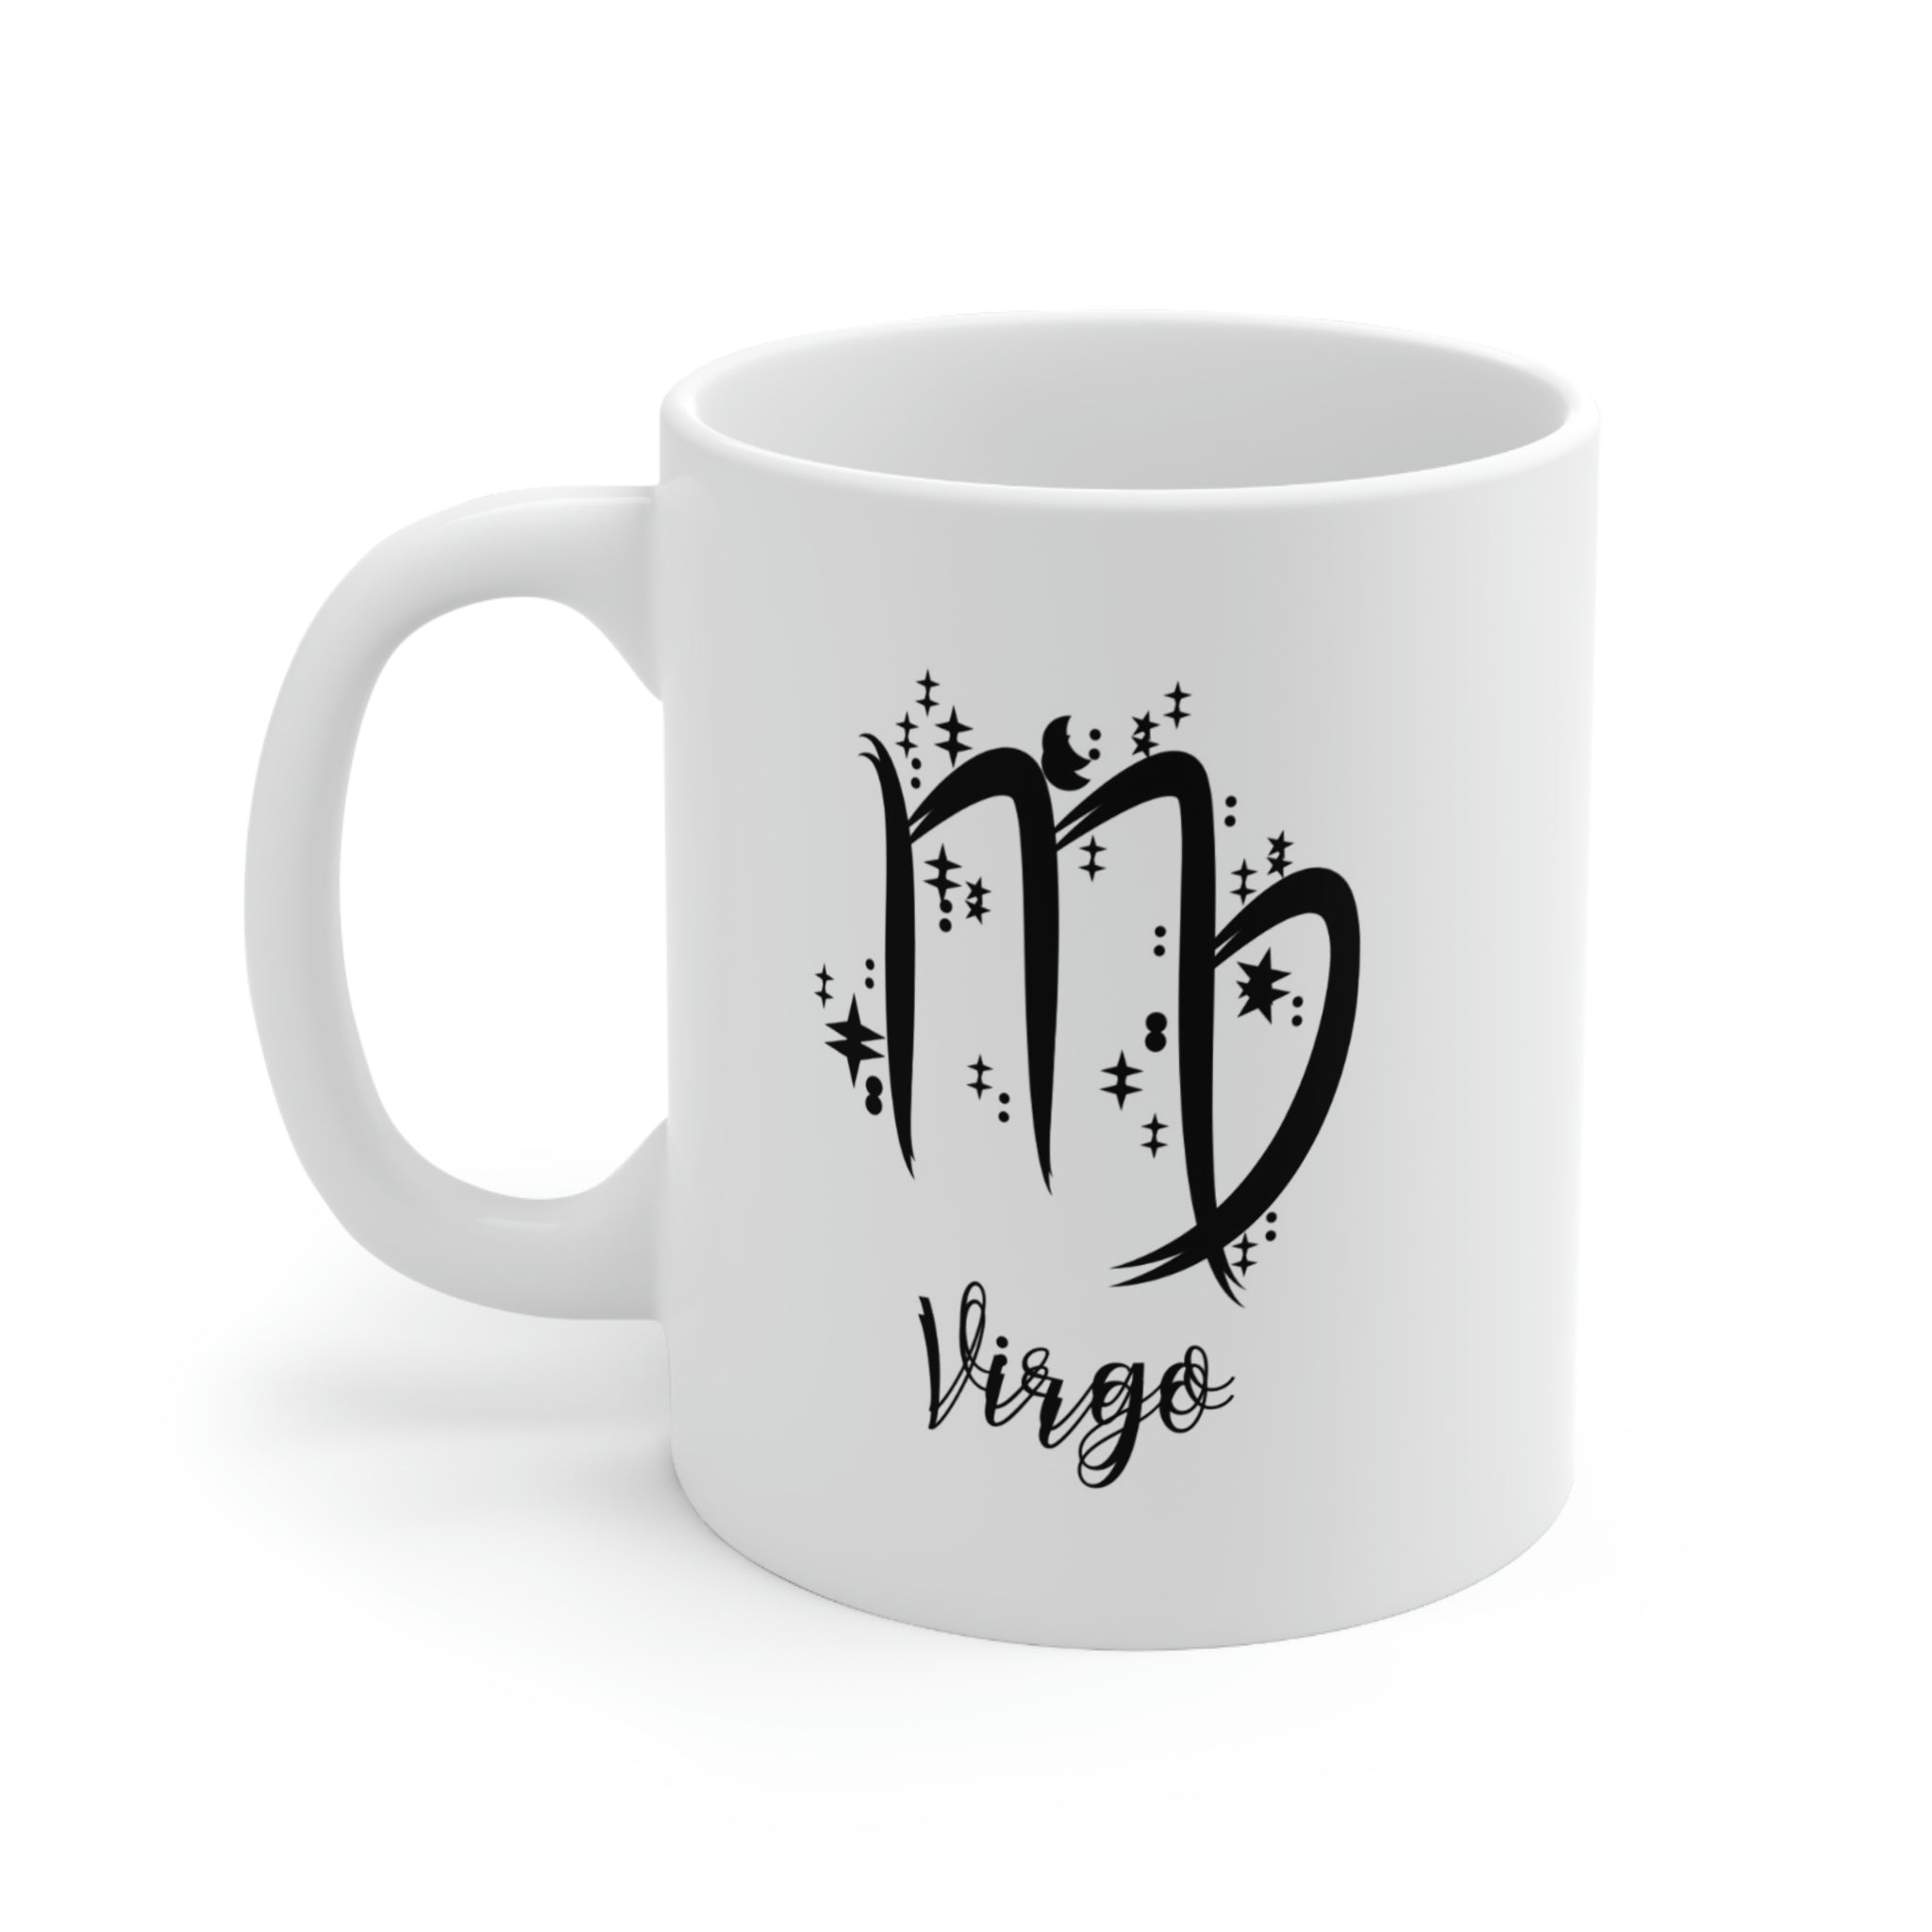 Virgo Ceramic Mug 11oz